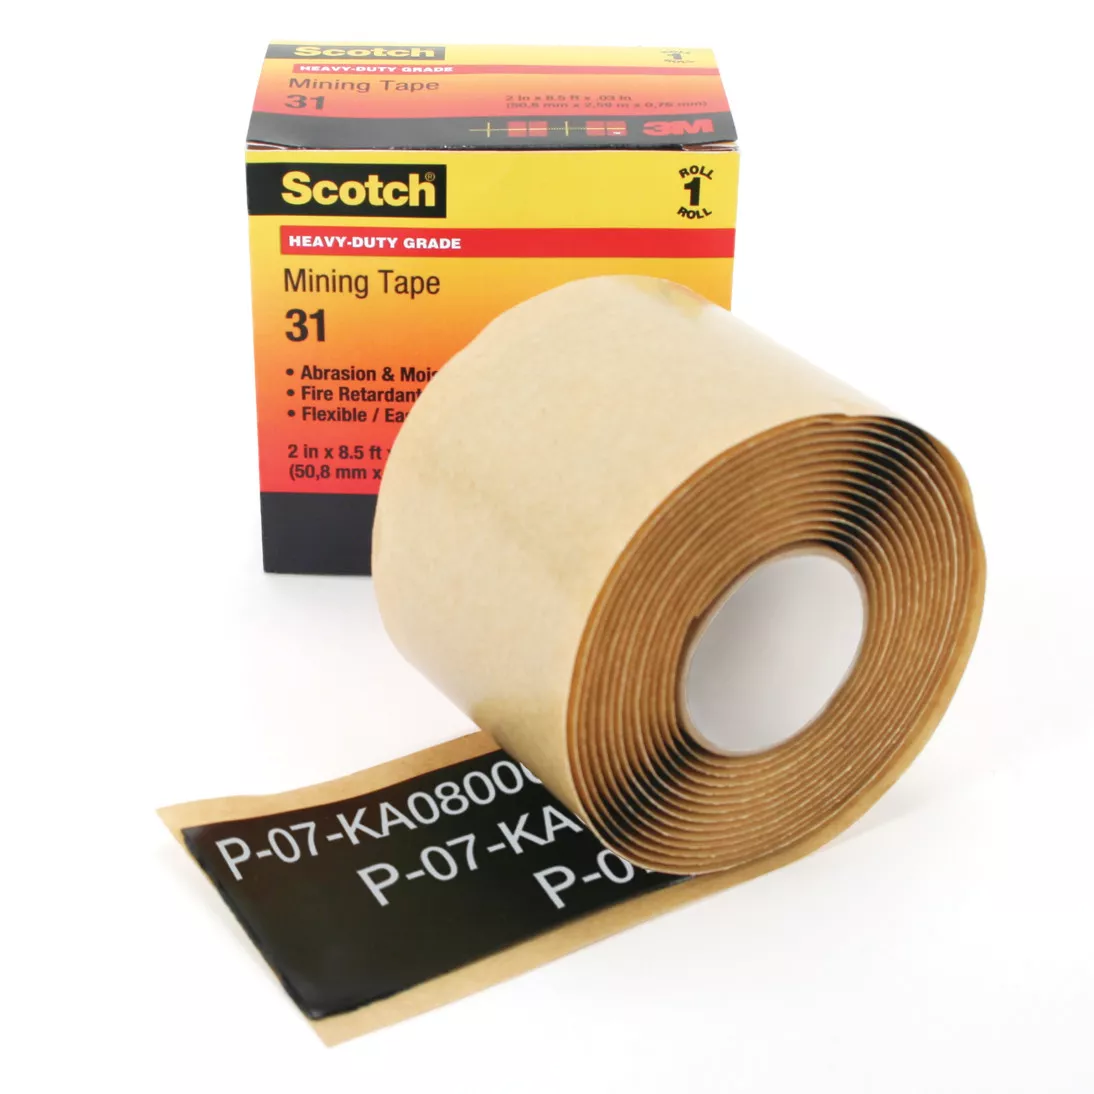 Scotch® Heavy-Duty Mining Tape 31, 2 in x 6 ft, Black, 10 rolls/Case